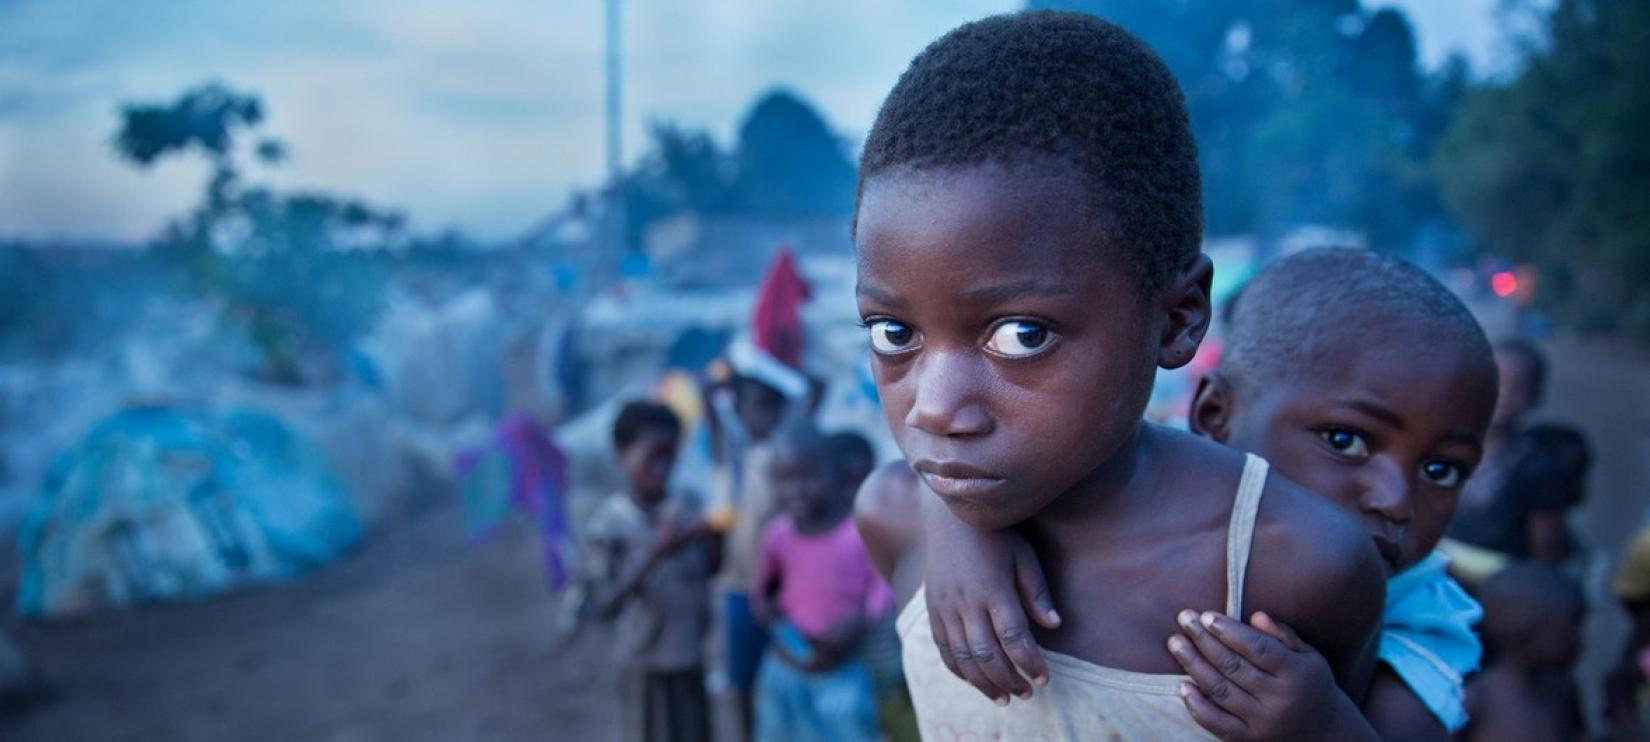 Onu Manifesta Preocupação Com Gravidade Da Crise Humanitária Na Rd Congo As Nações Unidas No 